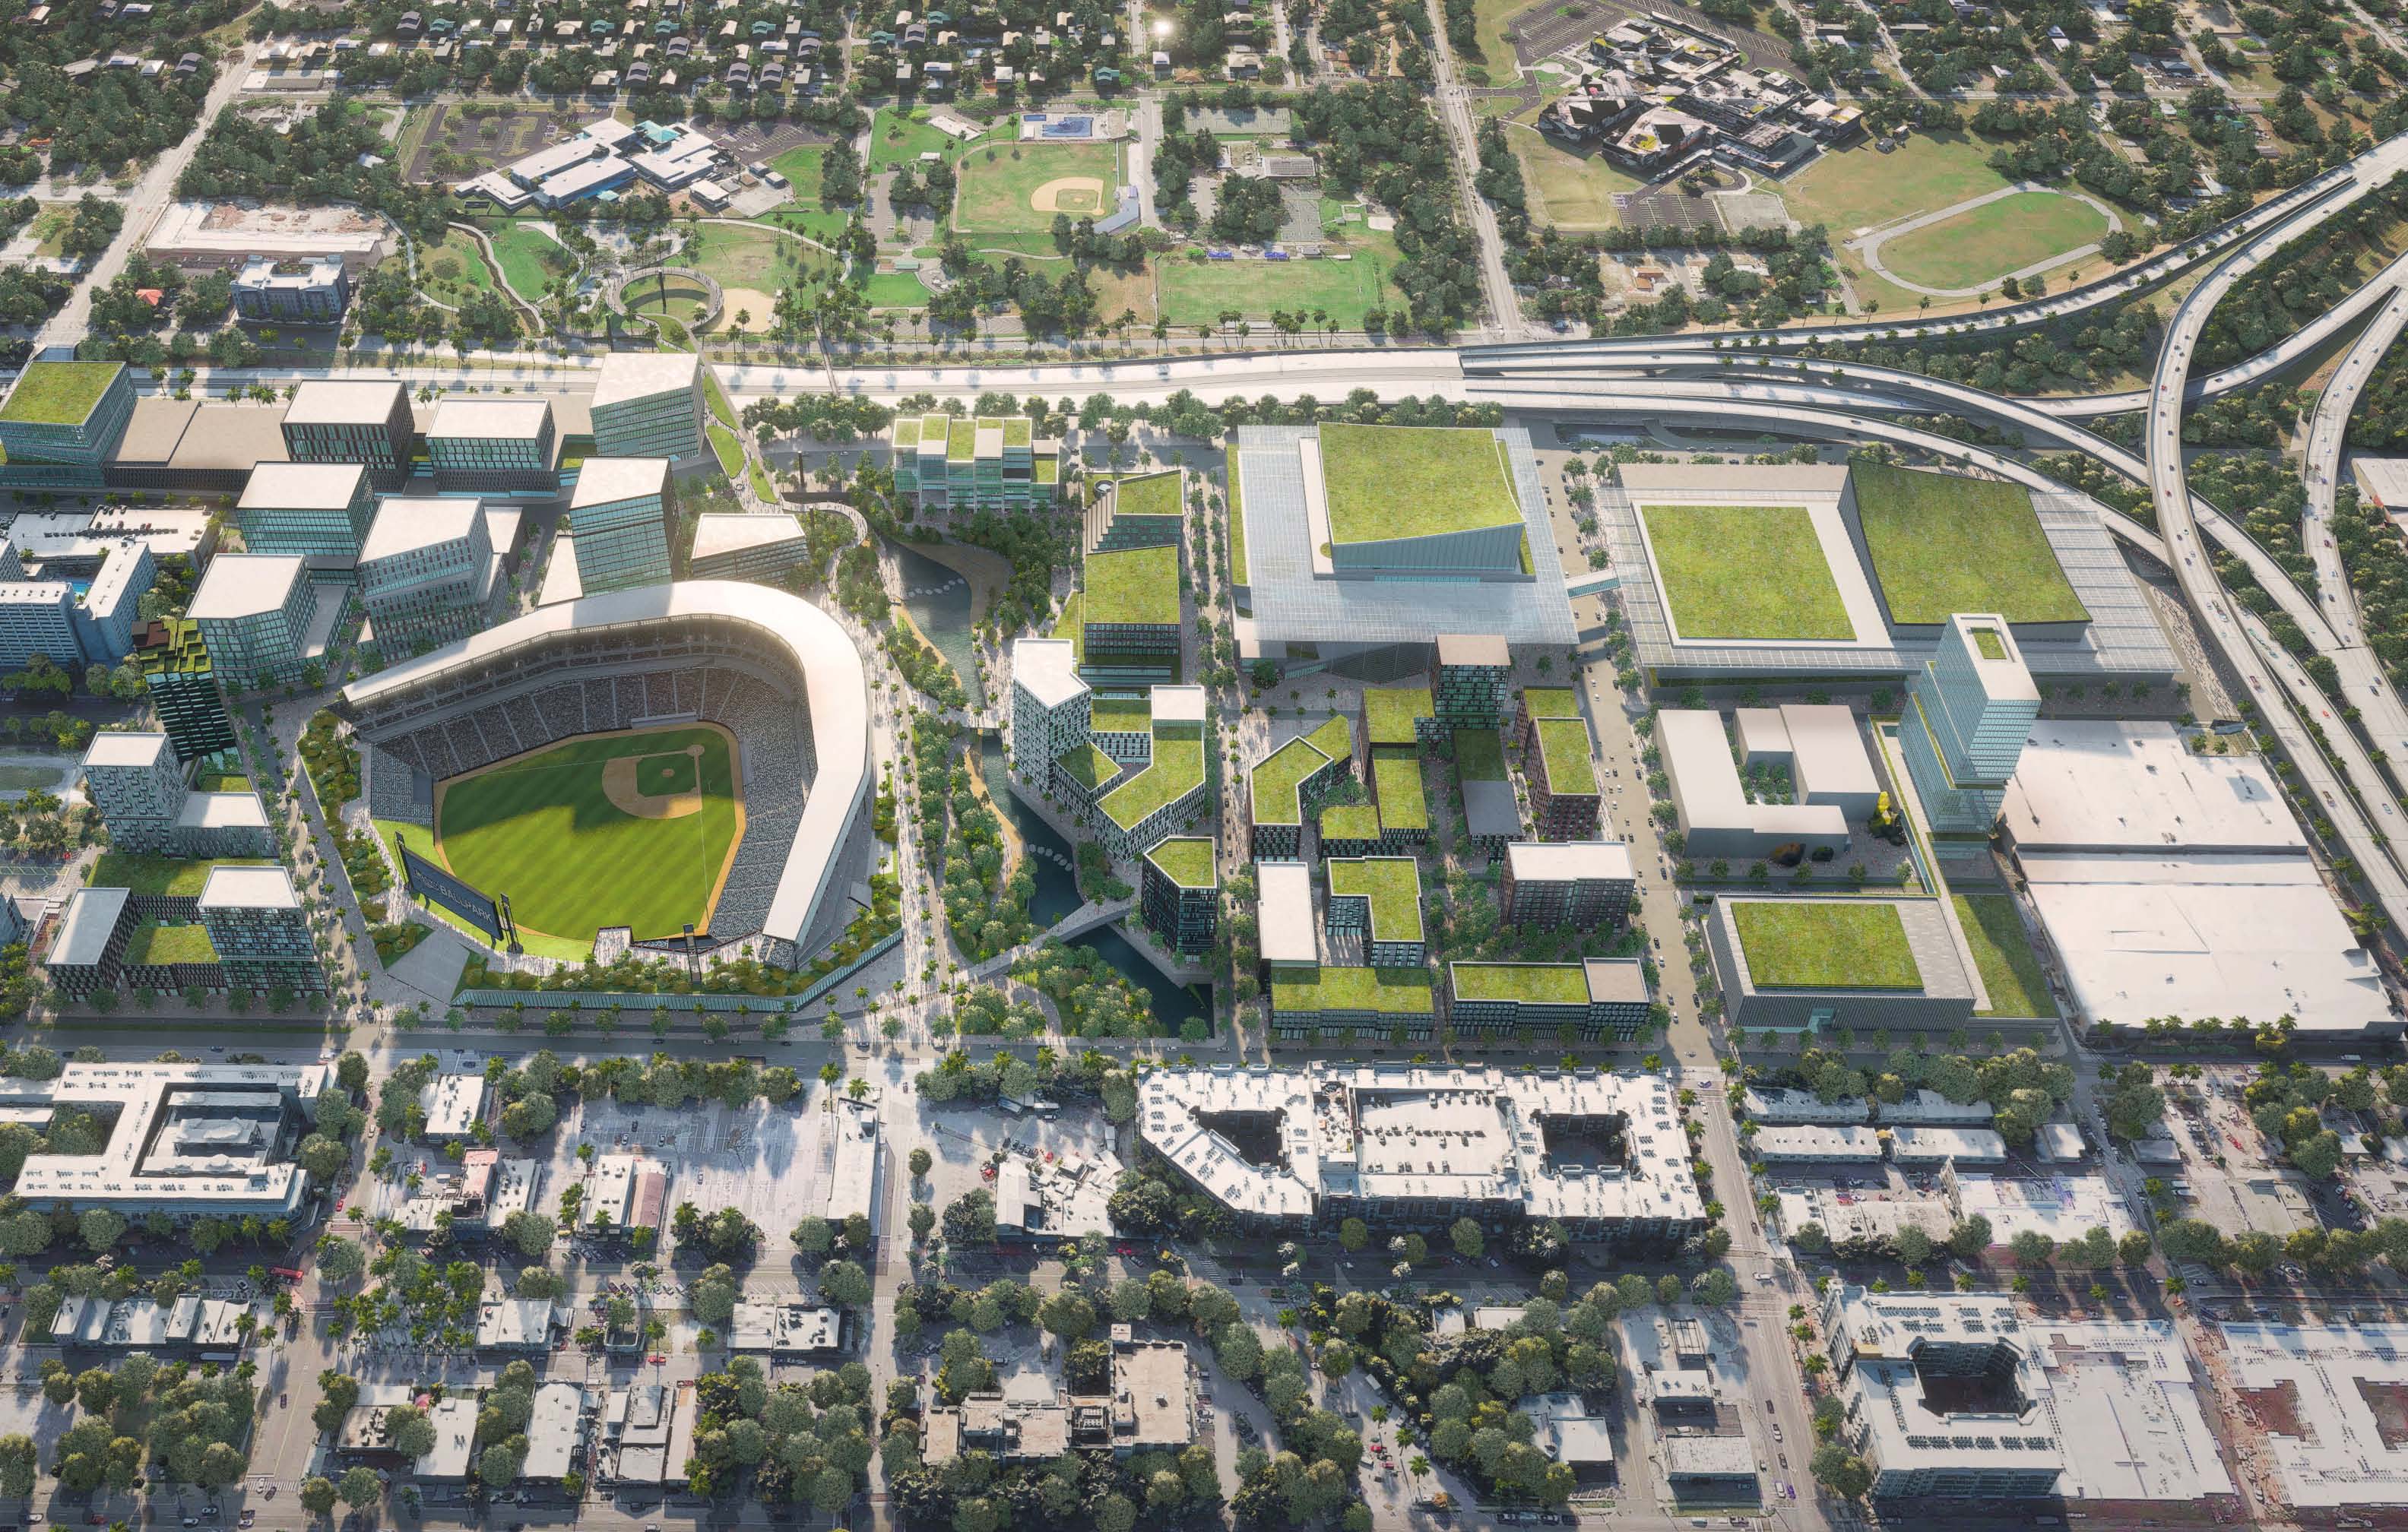 St. Petersburg mayor reopens talks on future of Rays stadium site